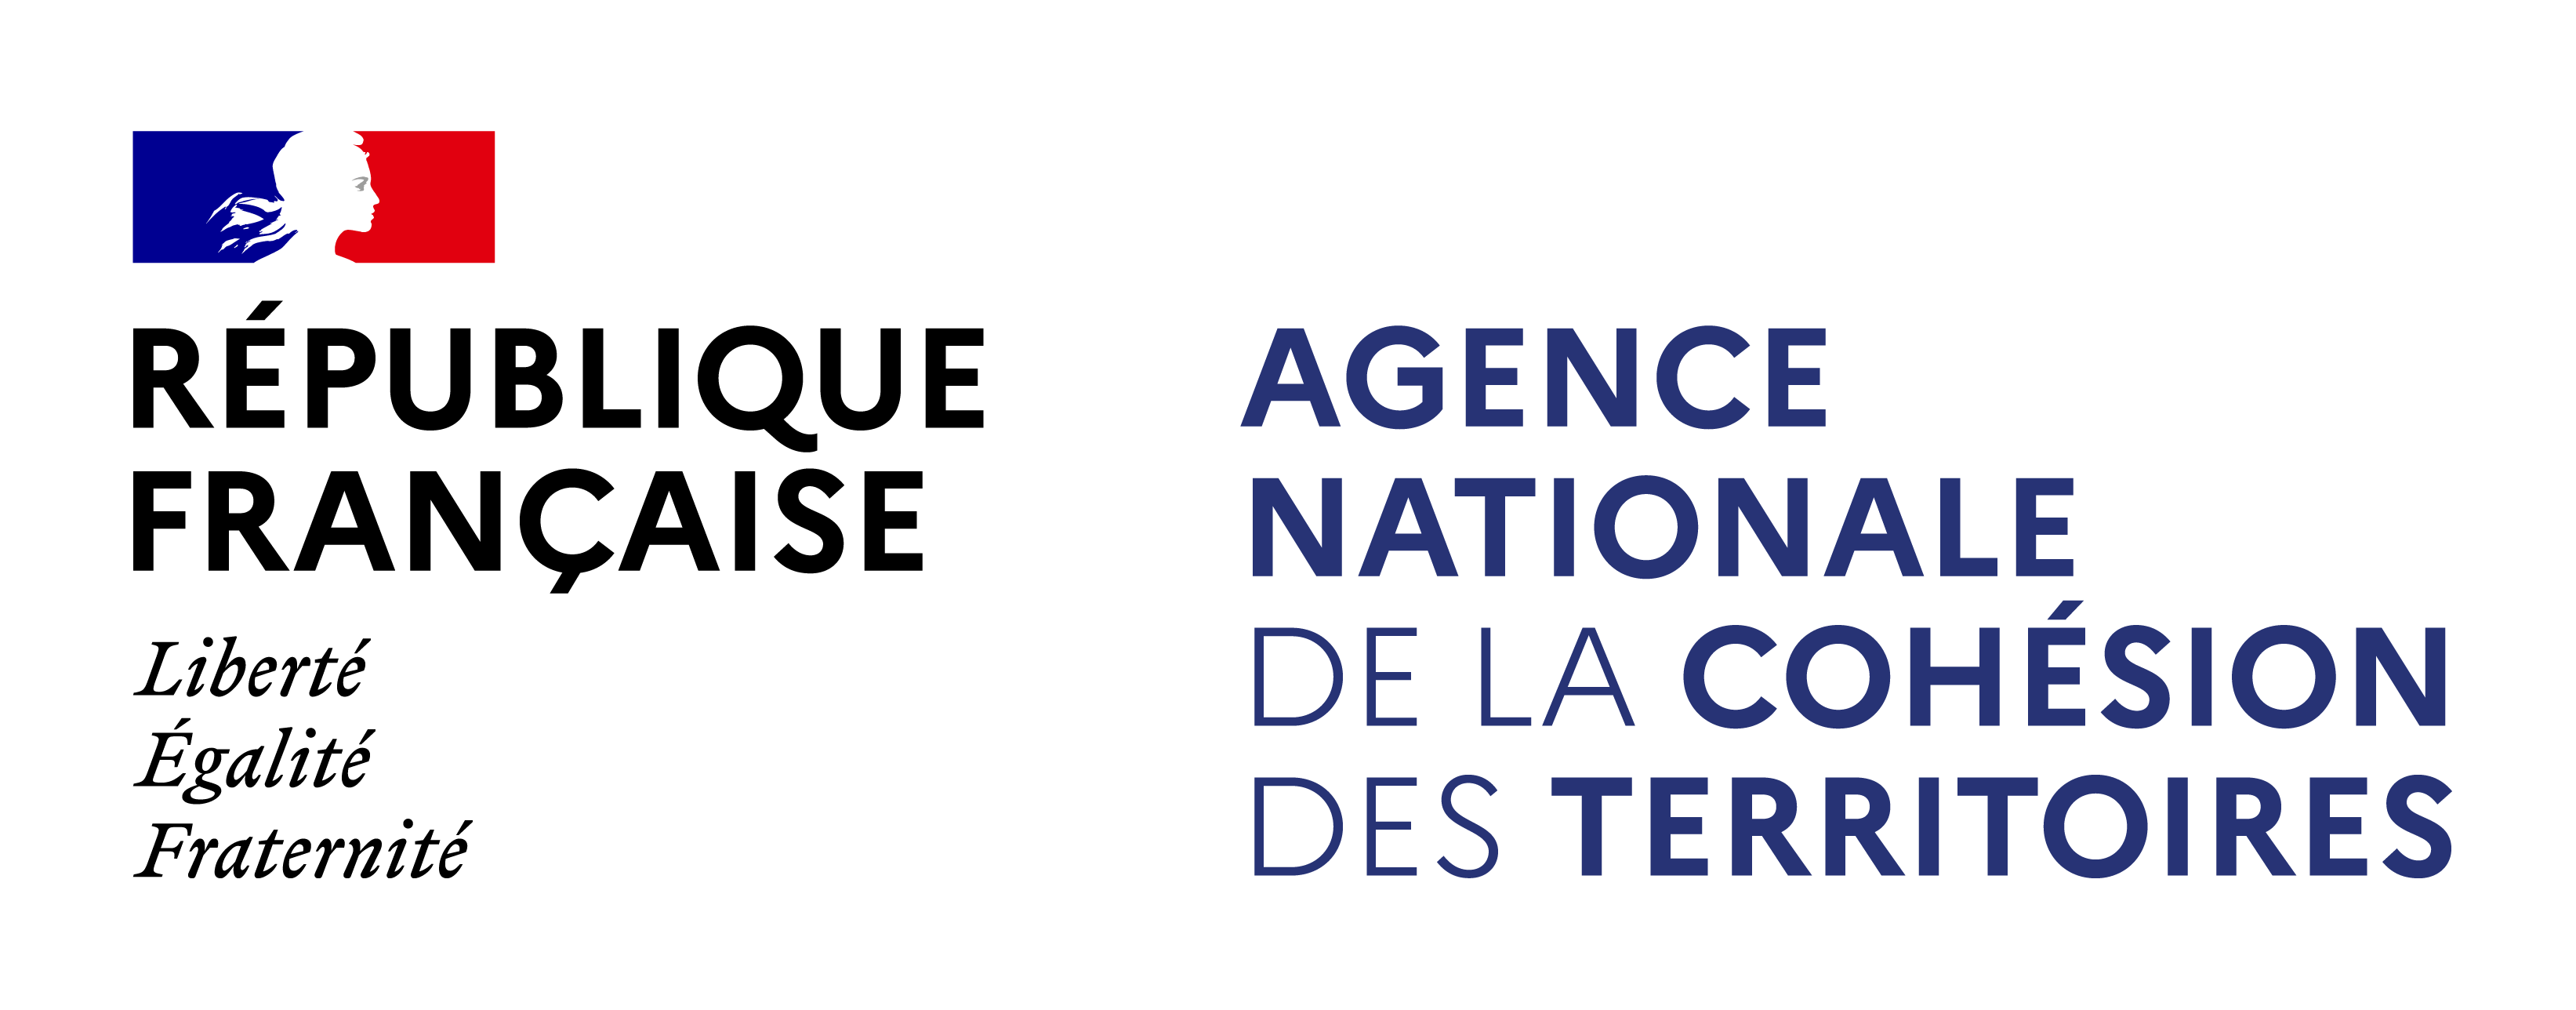 Logo Agence Nationale de la Cohesion des Territoires